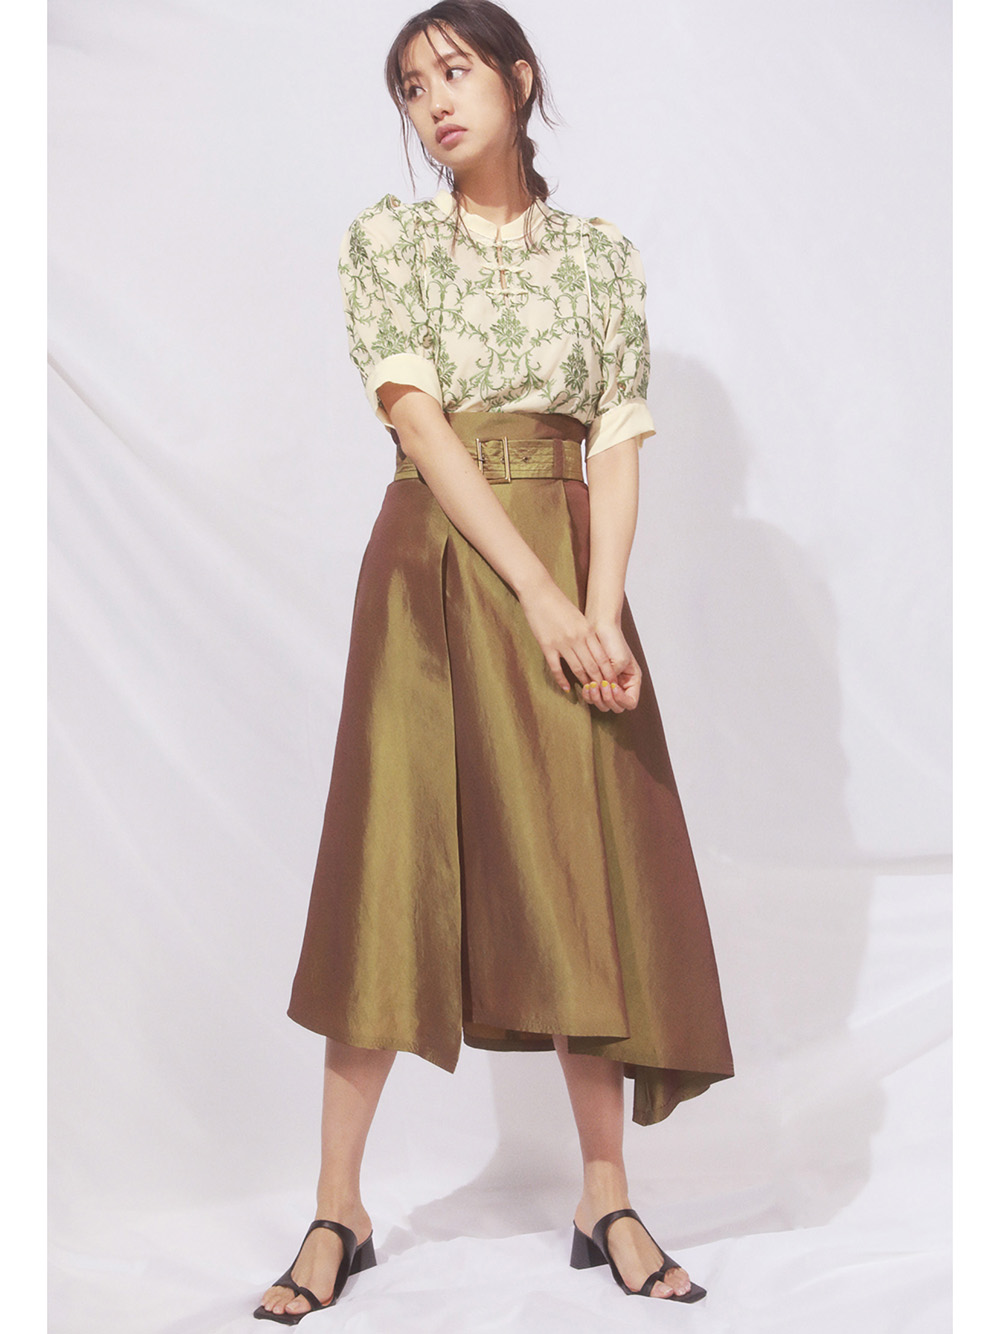 人気新作 リリーブラウン オリエンタル刺繍スカートの通販 by sun